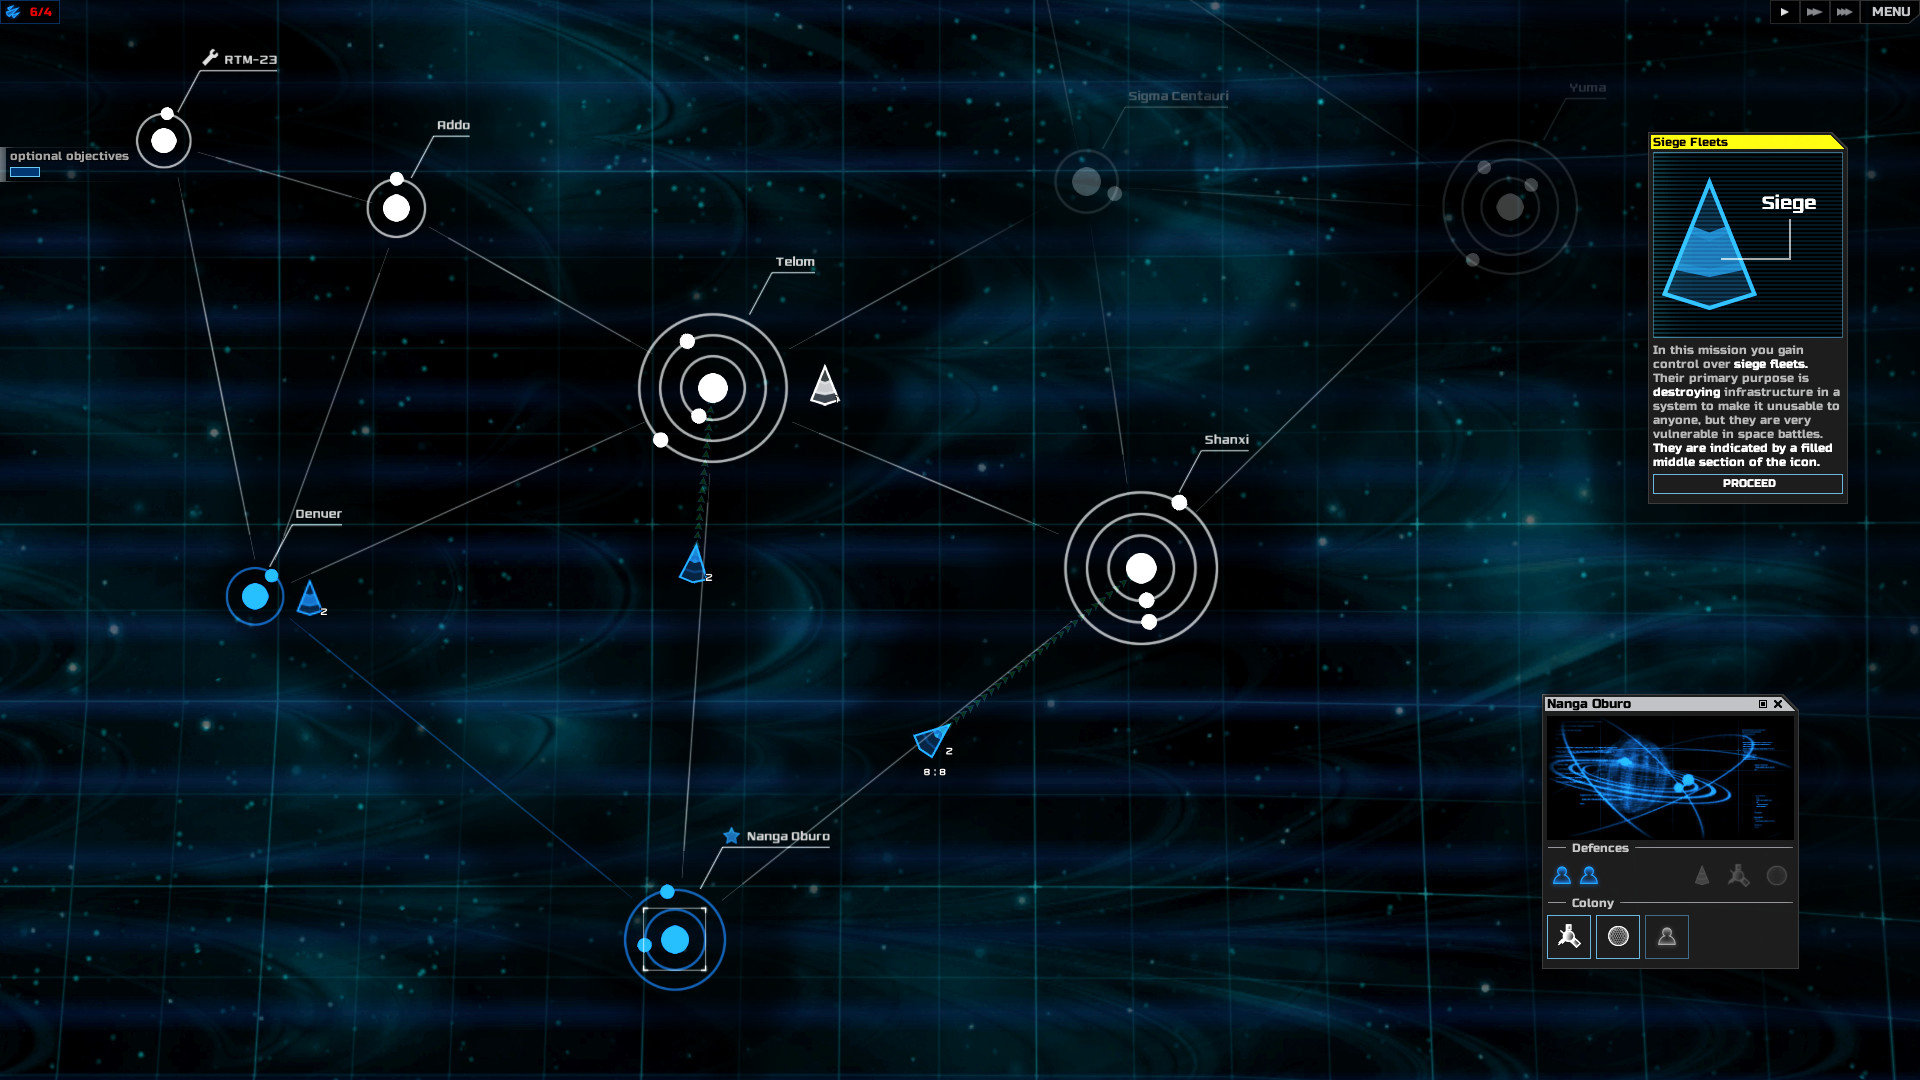 SPACECOM screenshot